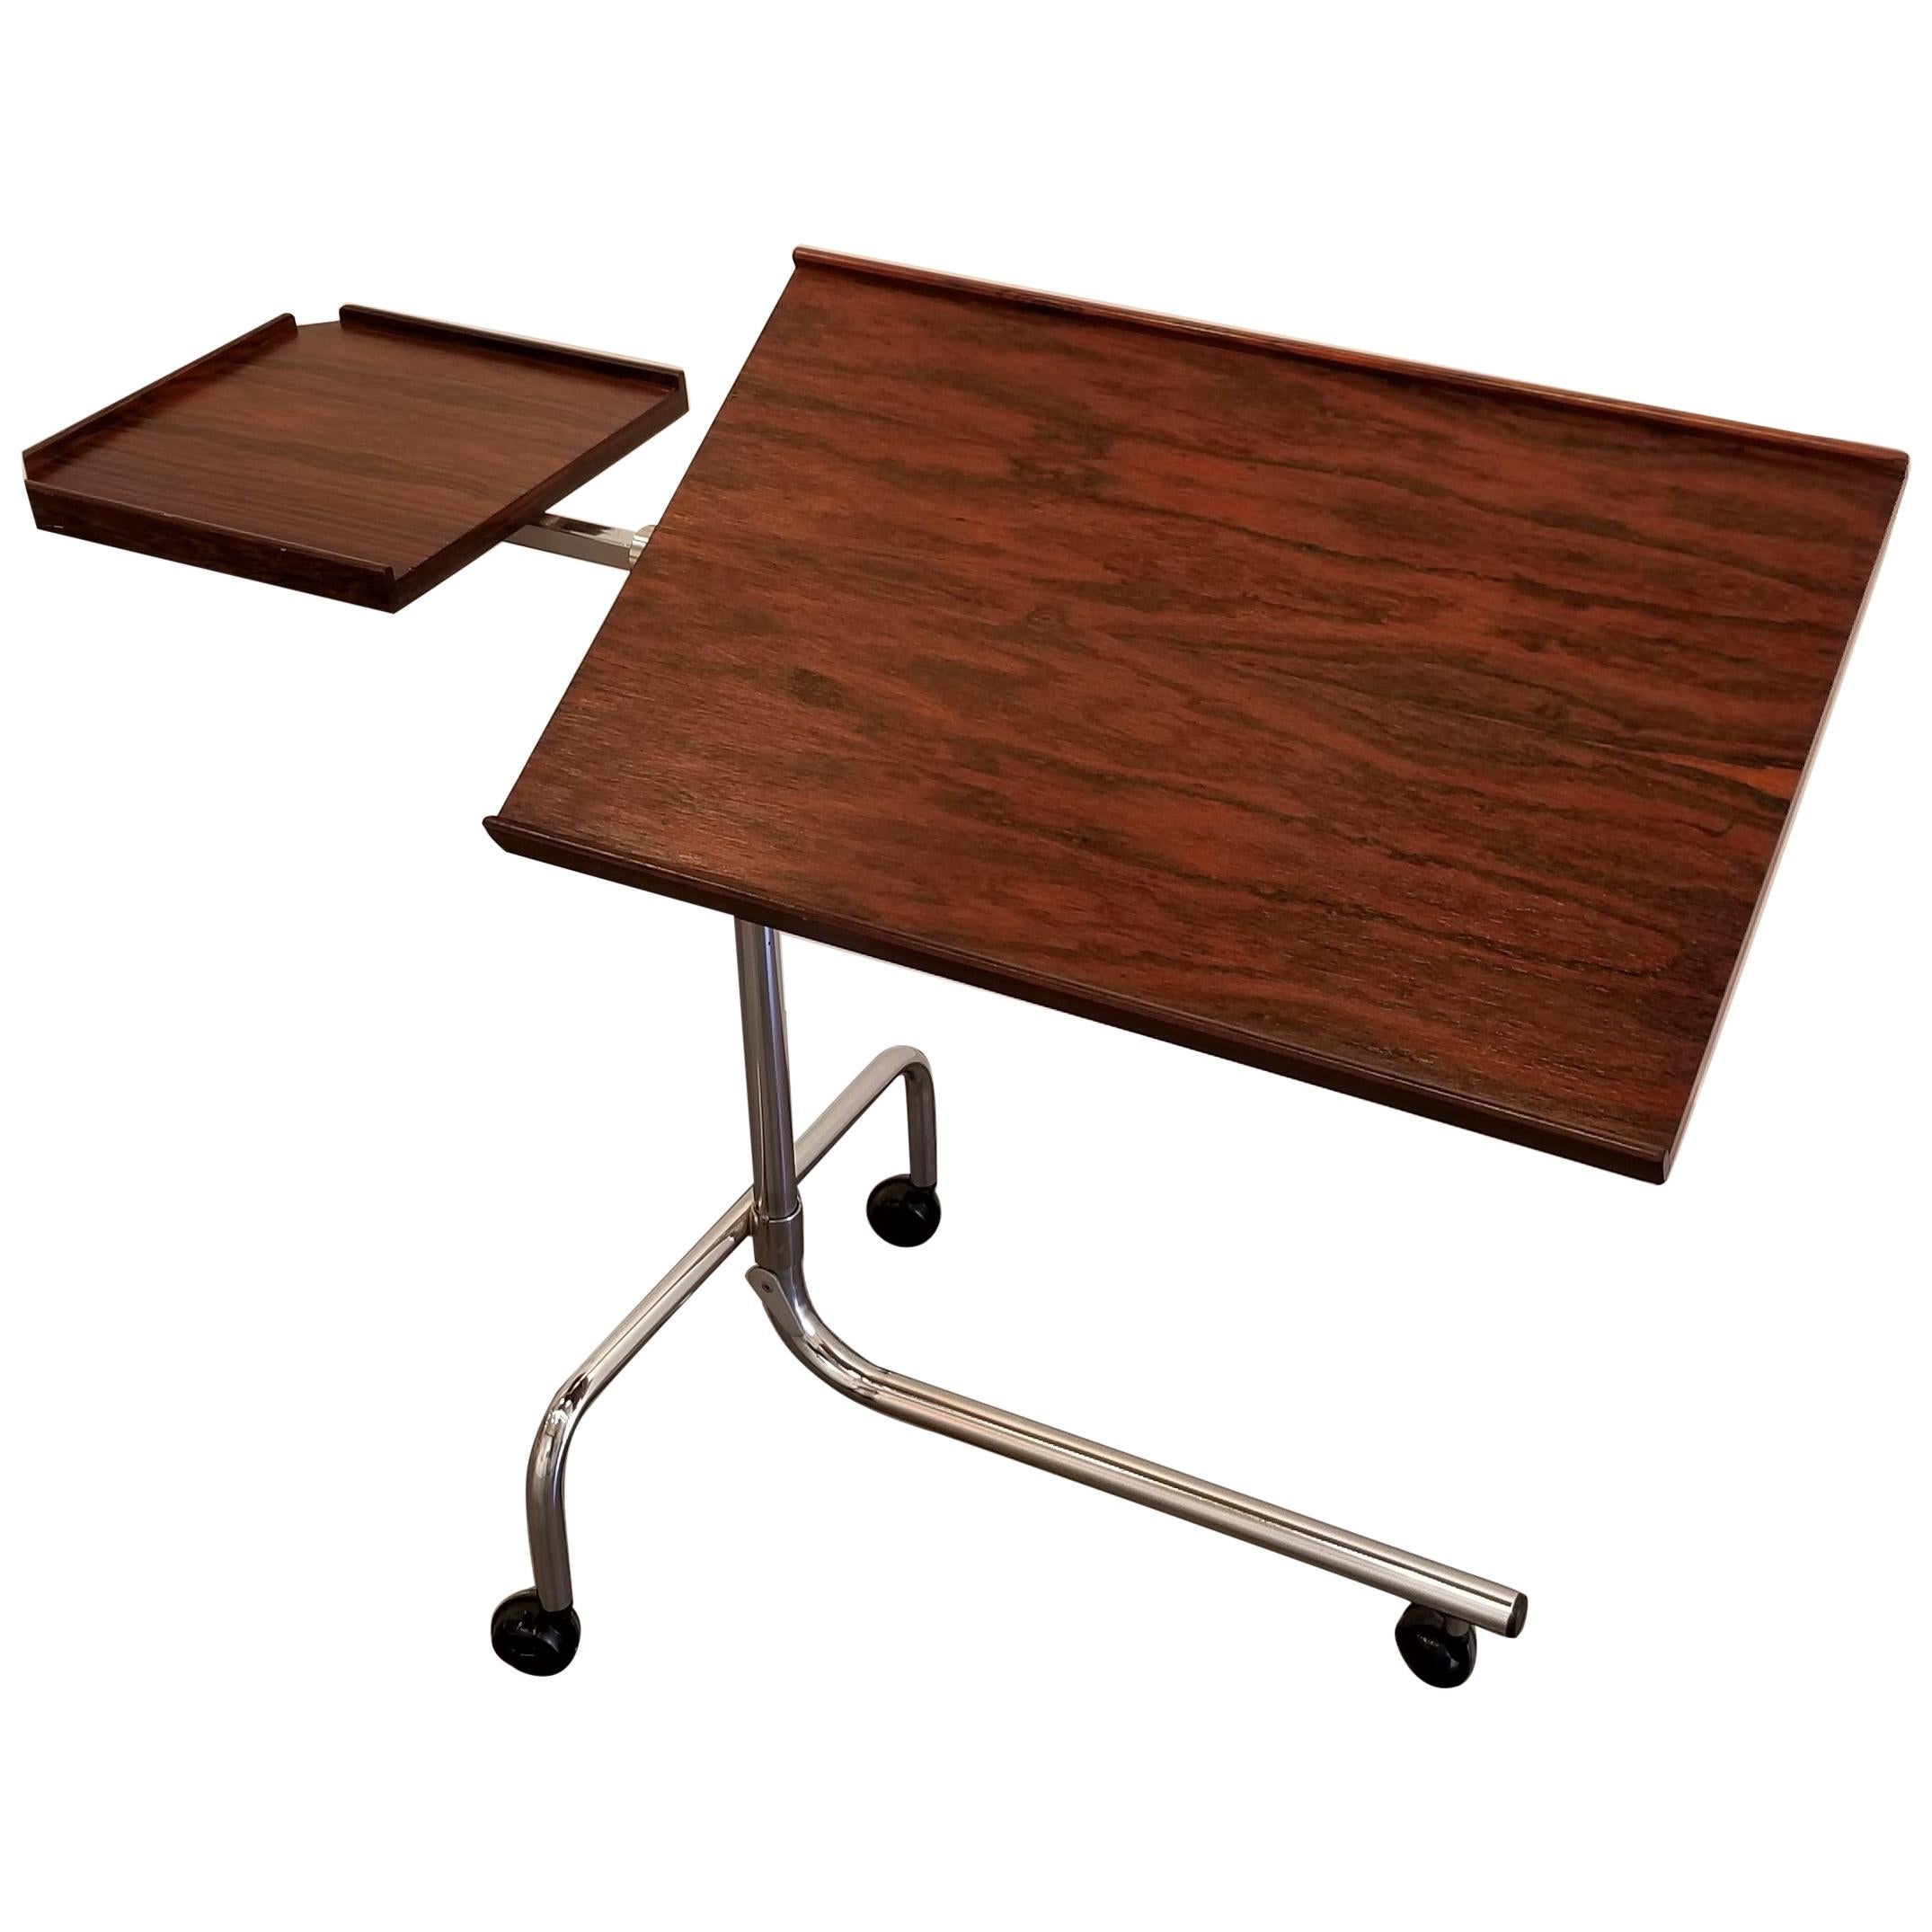 Danecastle Aps Adjustable Bedside Desk or Table For Sale